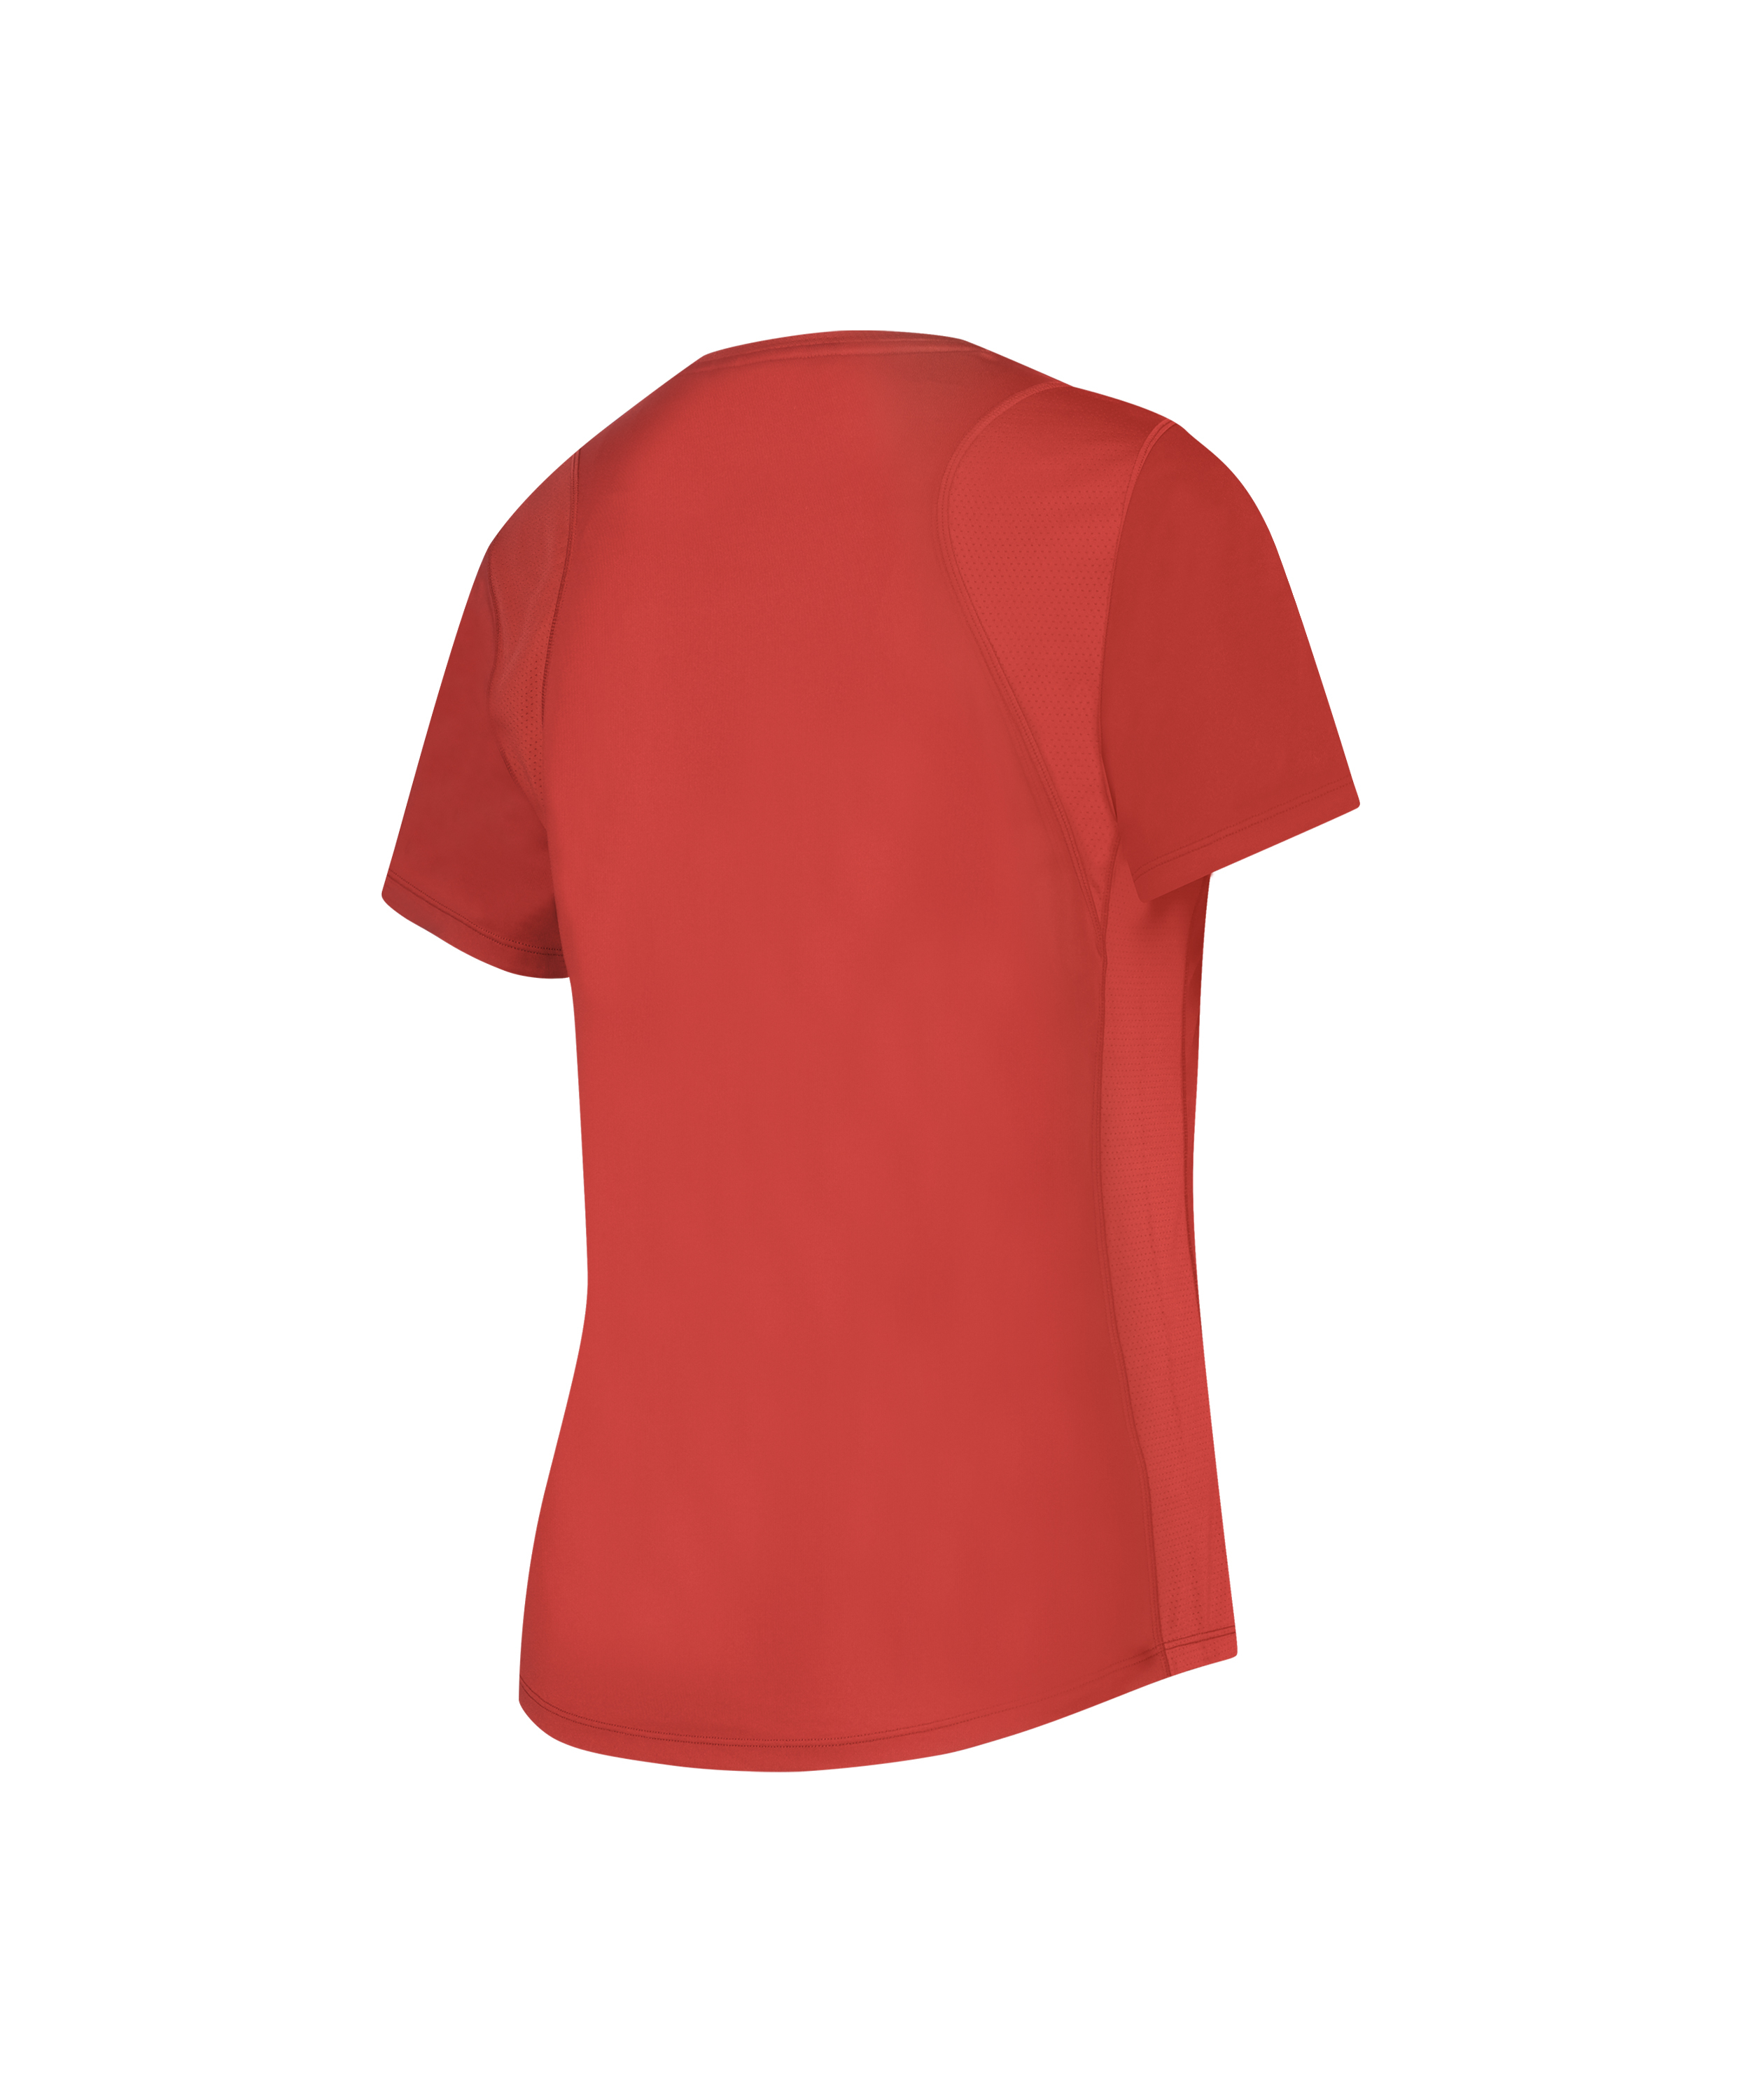 HKMX Sport schmal geschnittenes T-Shirt, Rot, main